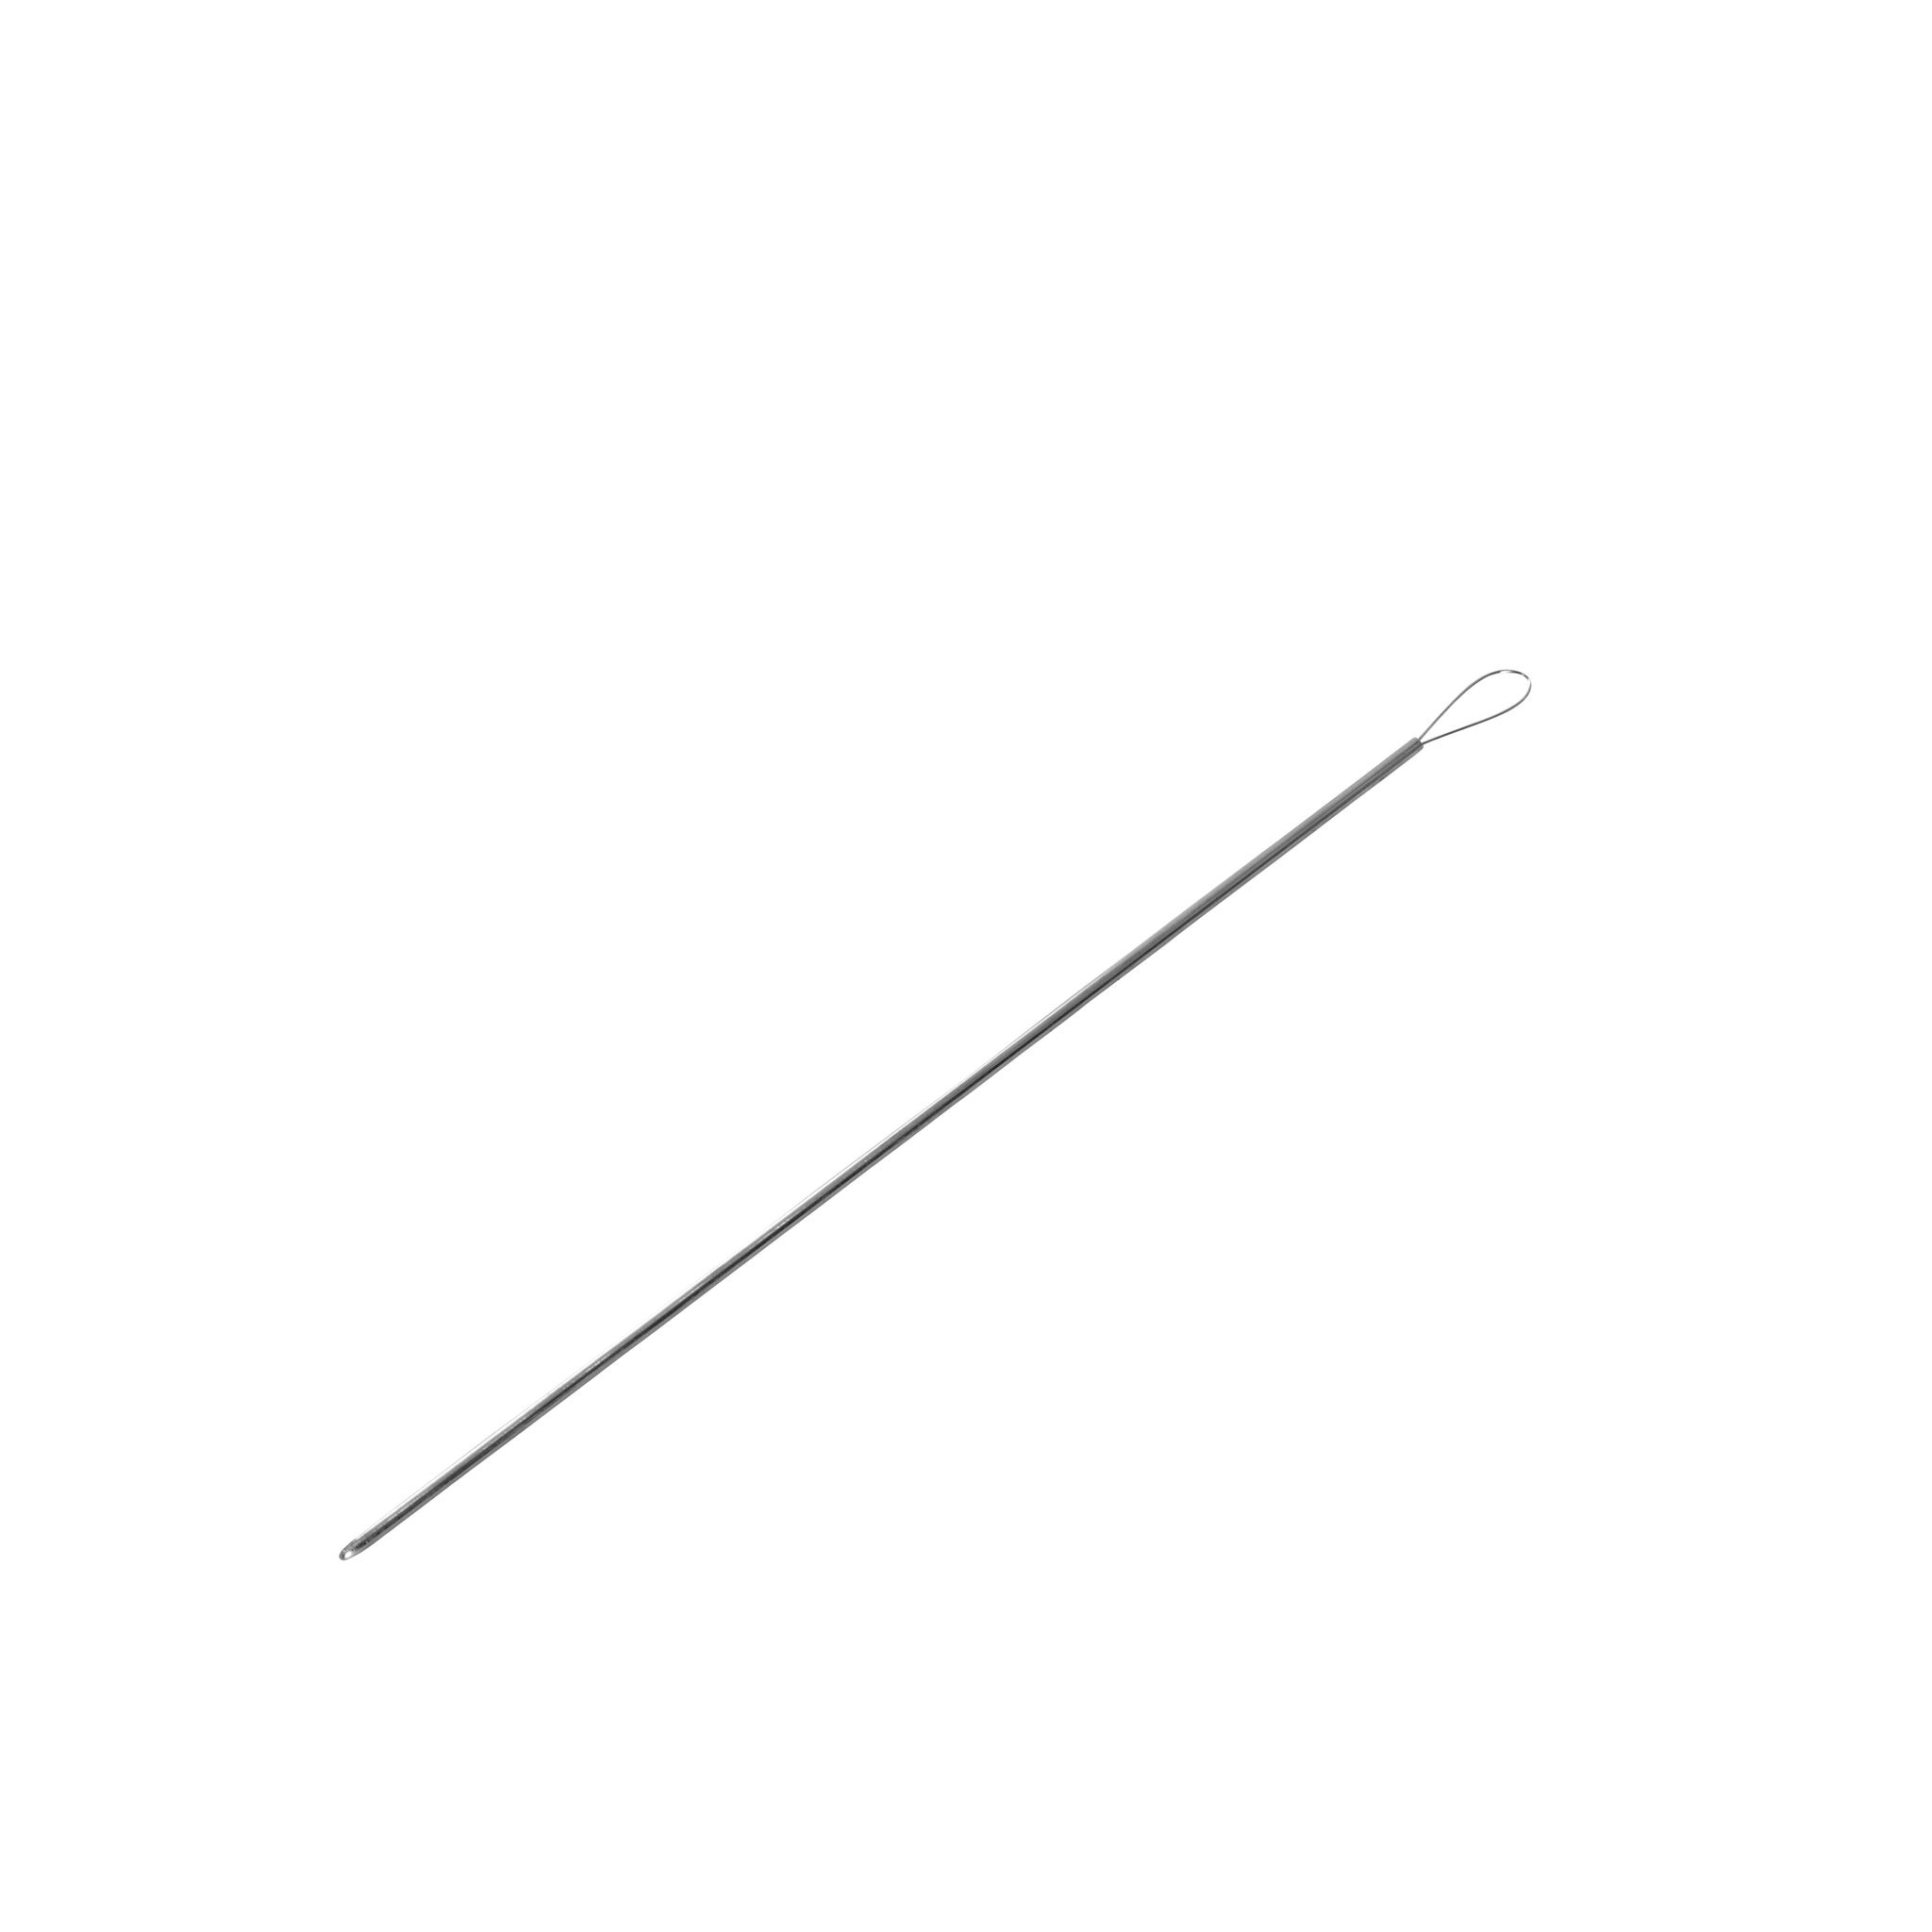 Dyneema splicing needle